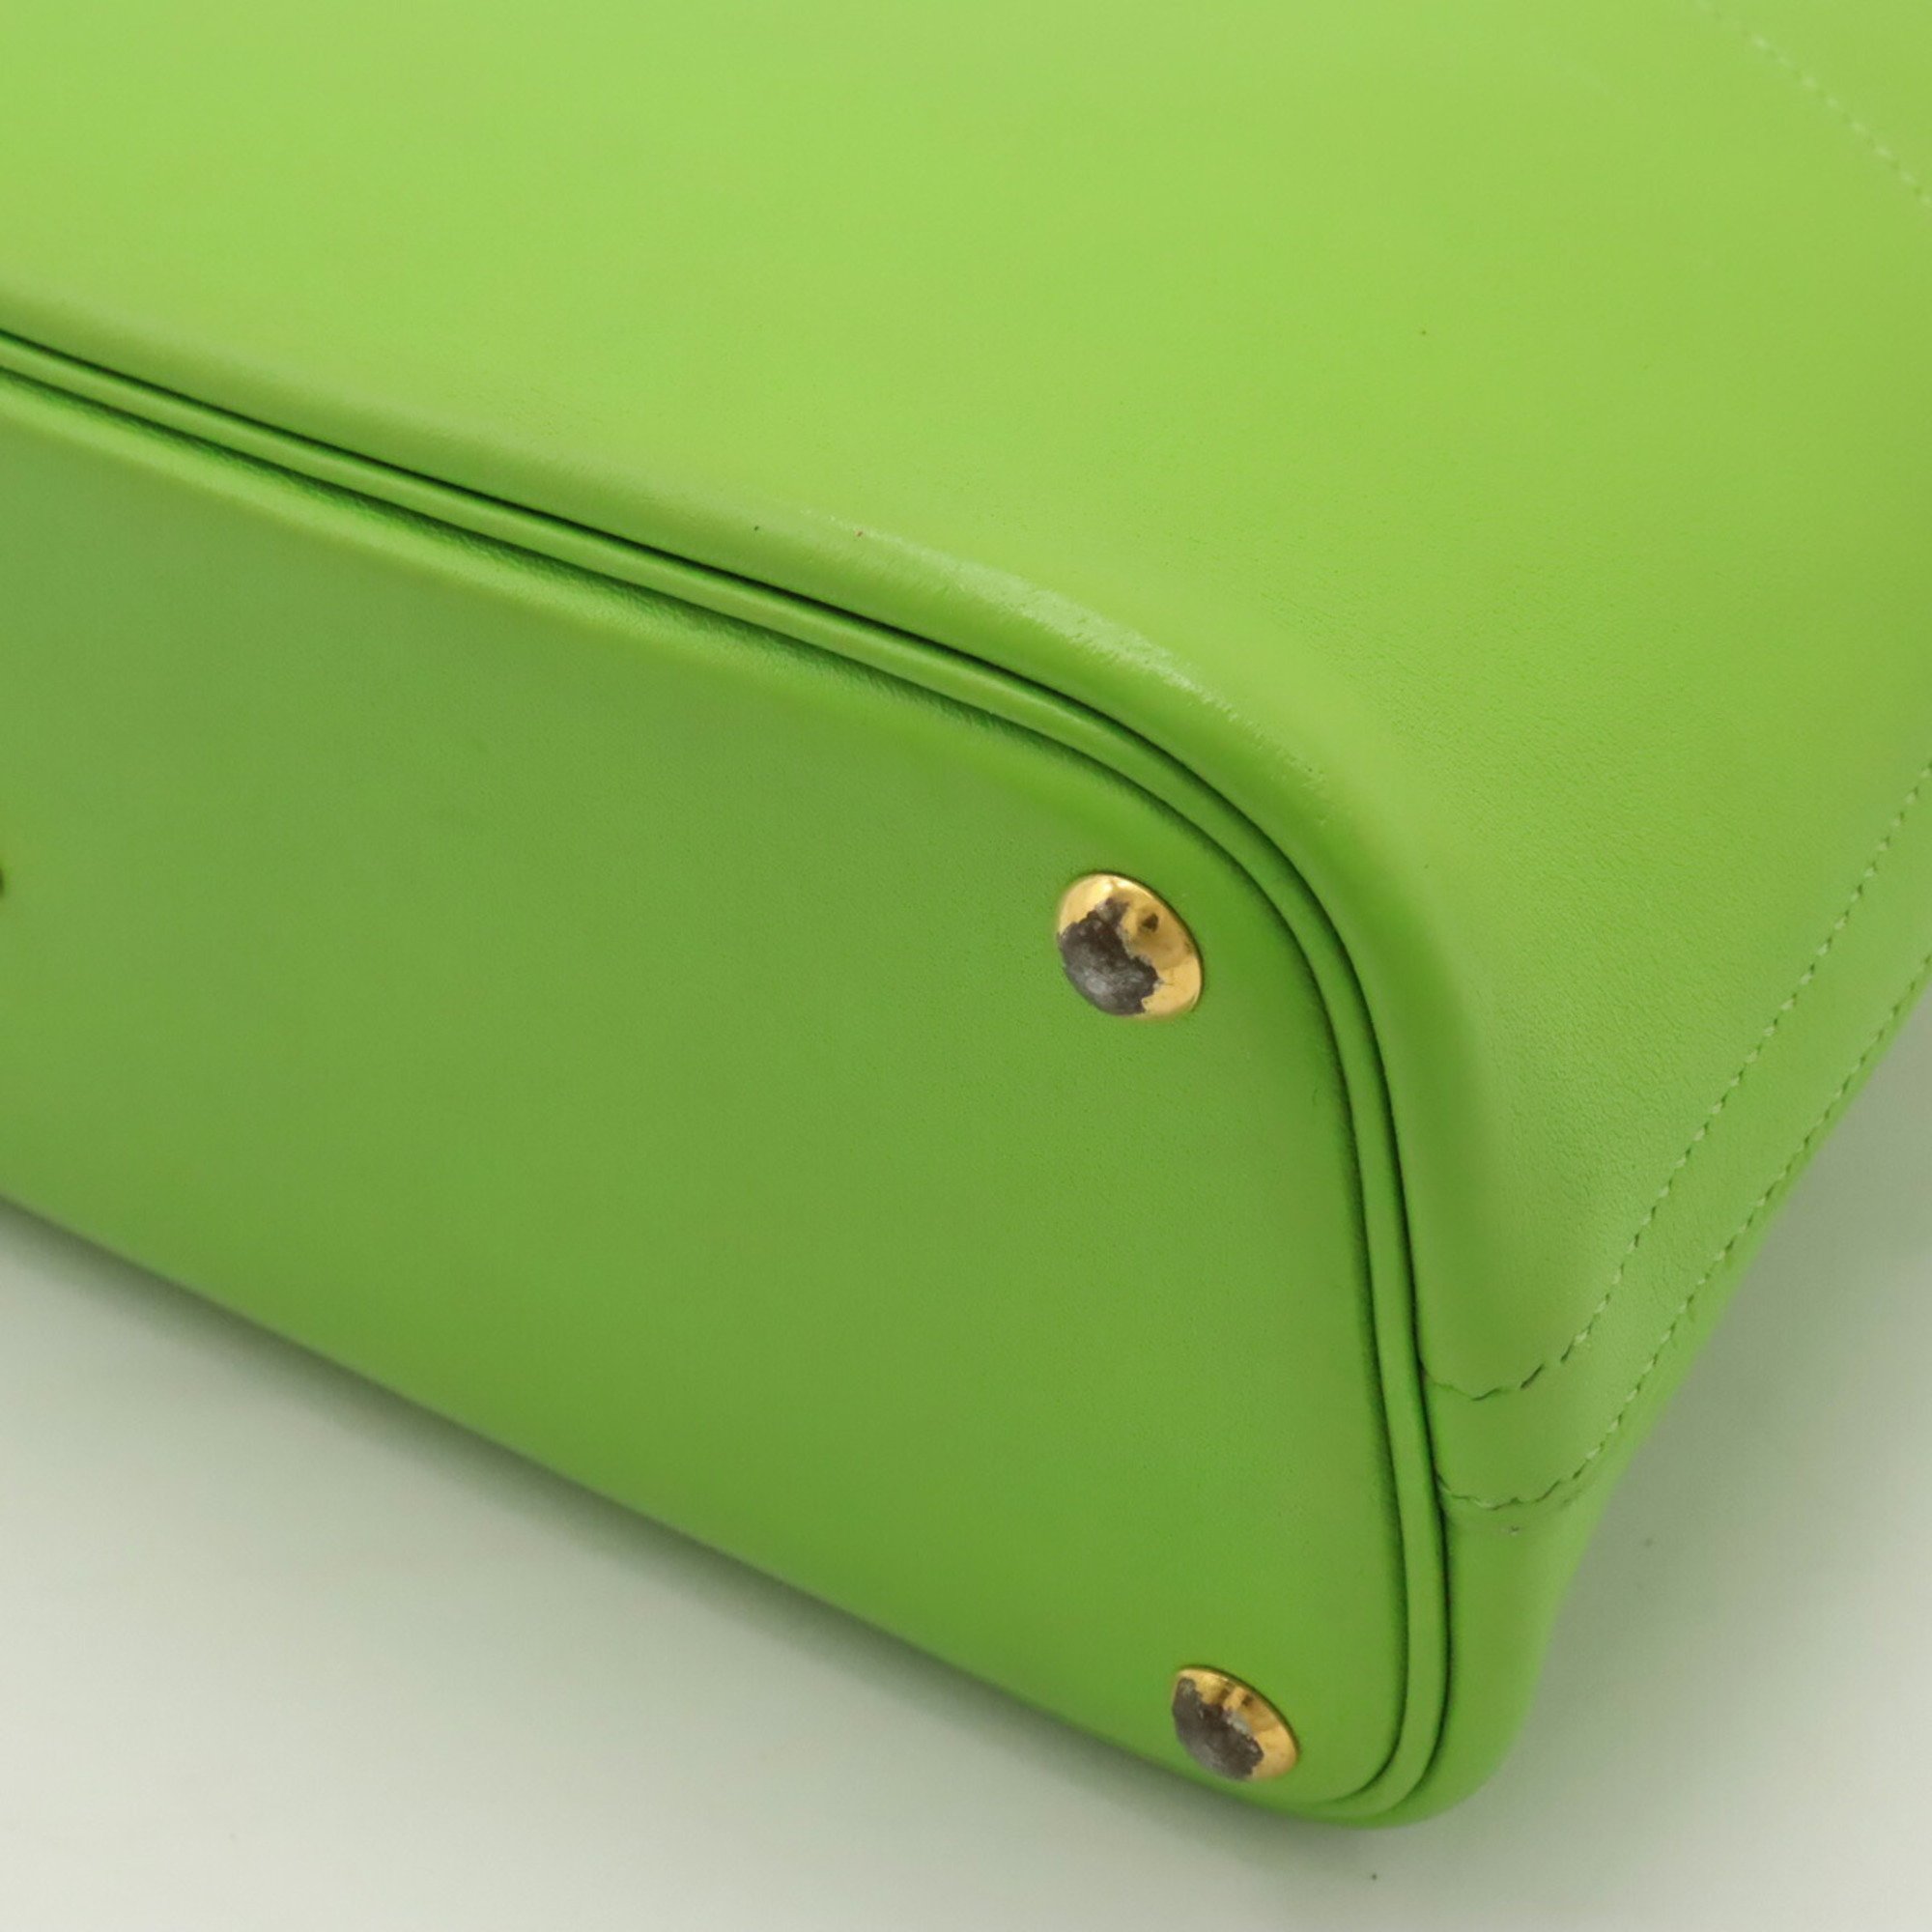 HERMES Bolide 27 handbag shoulder bag leather green V stamp